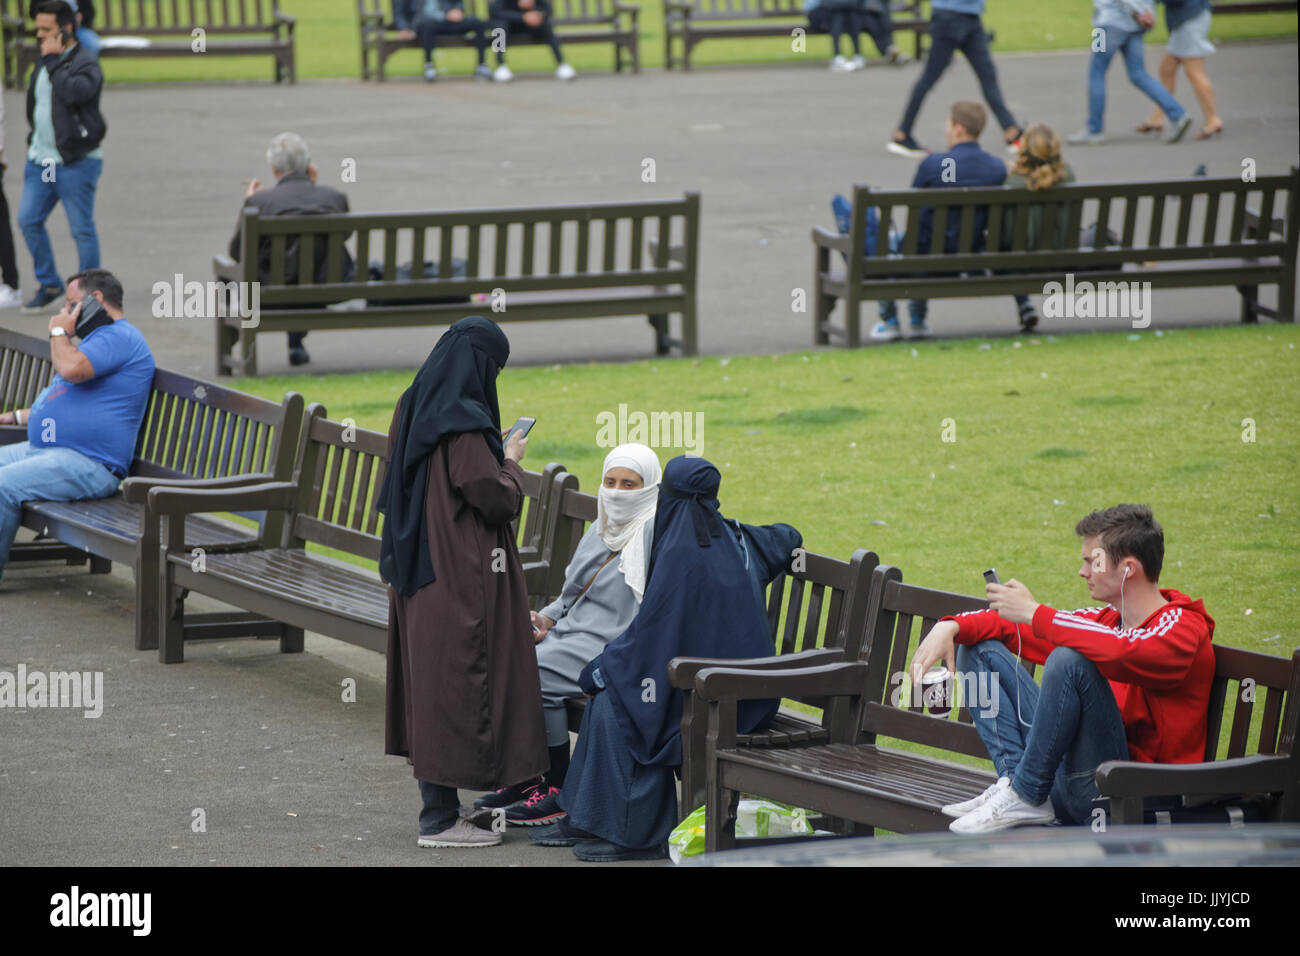 Asian refugee vestito Hijab sciarpa su George Square Glasgow street NEL REGNO UNITO scena quotidiana Foto Stock